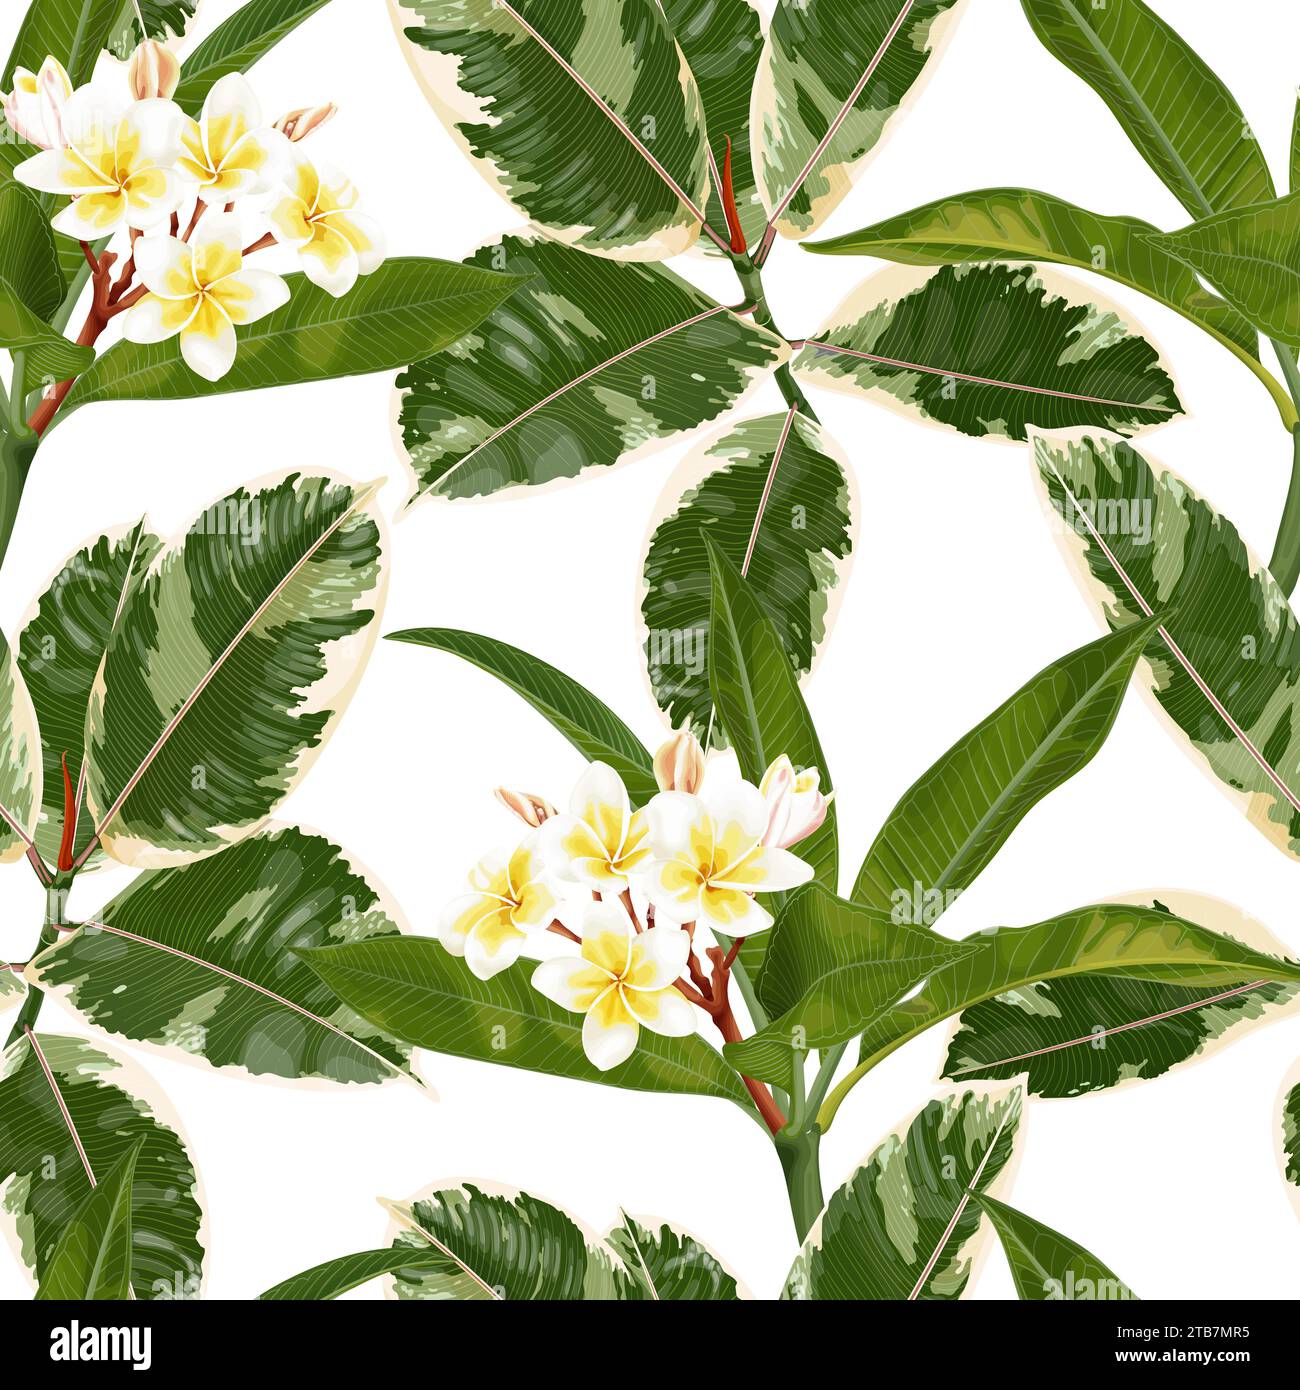 Motivo tropicale senza cuciture con fiori di plumeria, frangipani e foglie di ficus elastica. Illustrazione Vettoriale